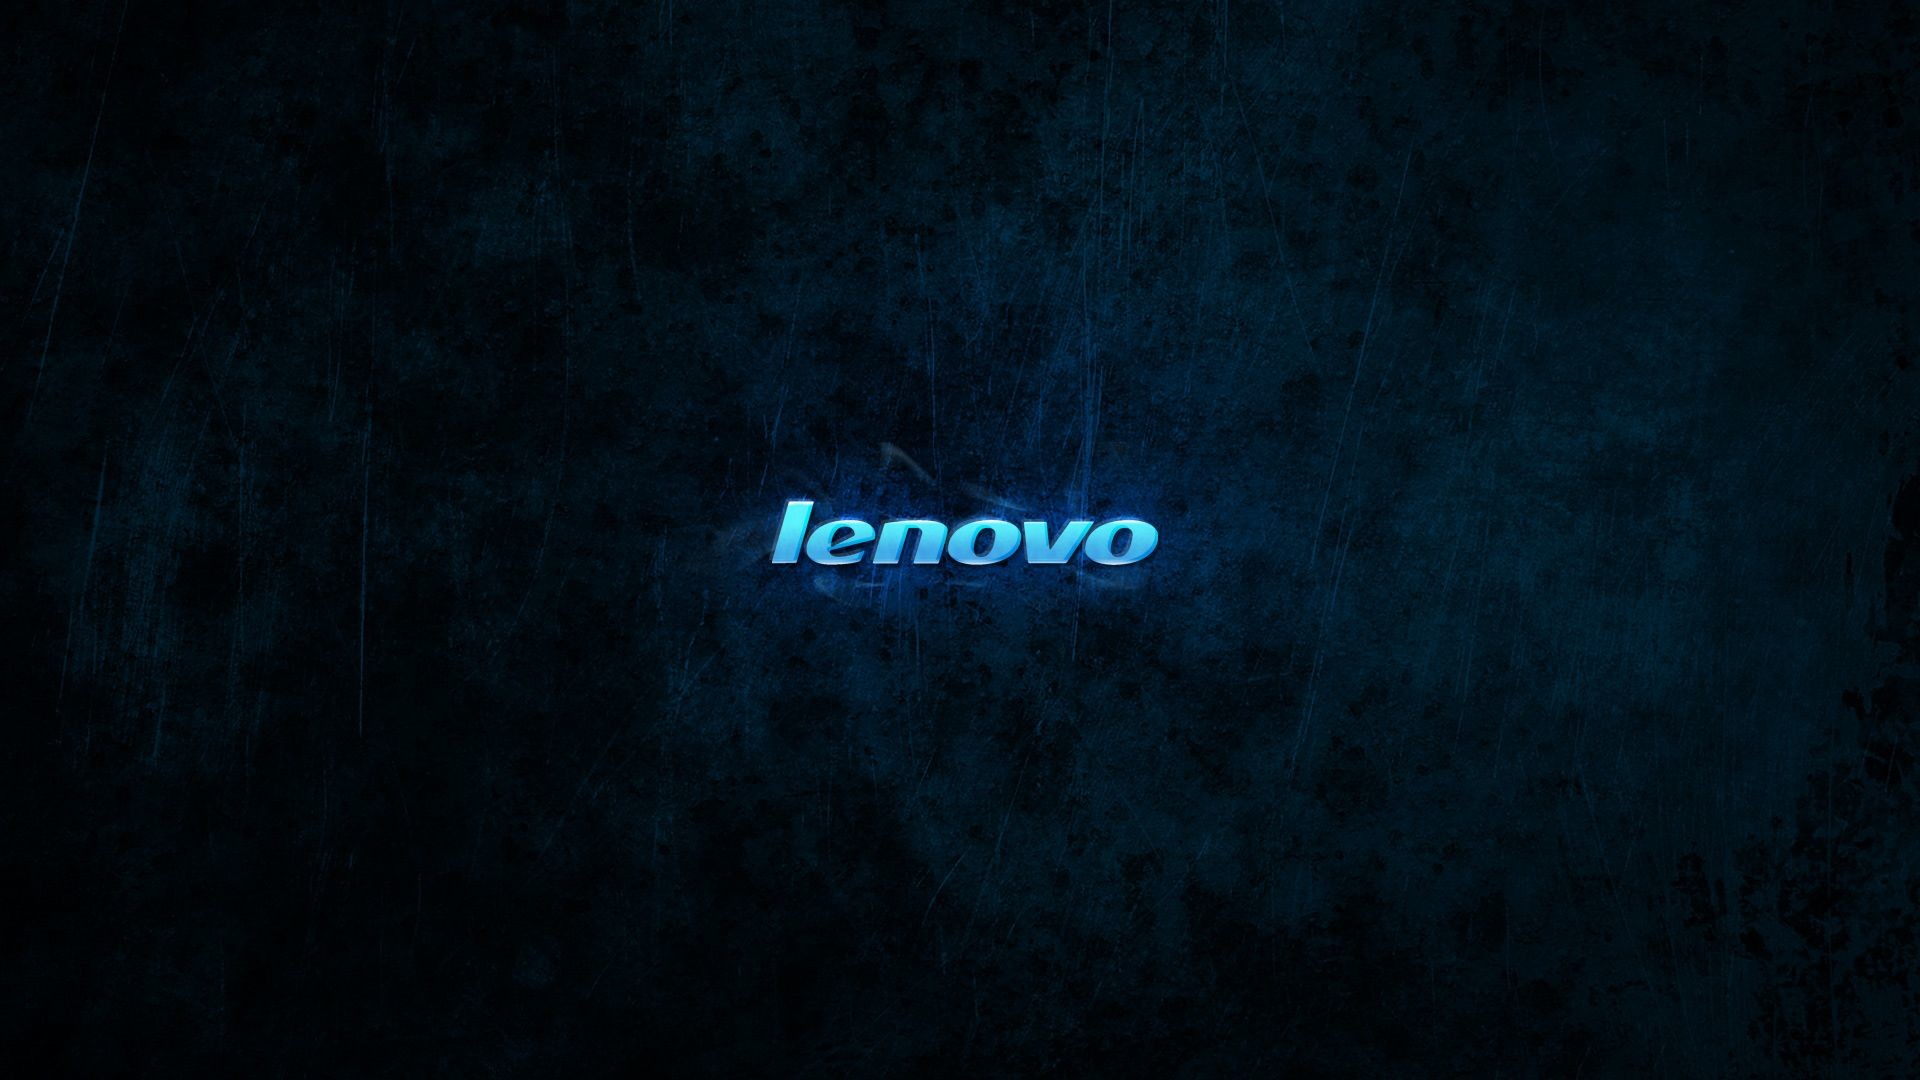 1920x1080 Lenovo Wallpaper Theme 1024Ã768 Lenovo Windows 7 Wallpapers (39 Wallpapers)  | Adorable Wallpapers